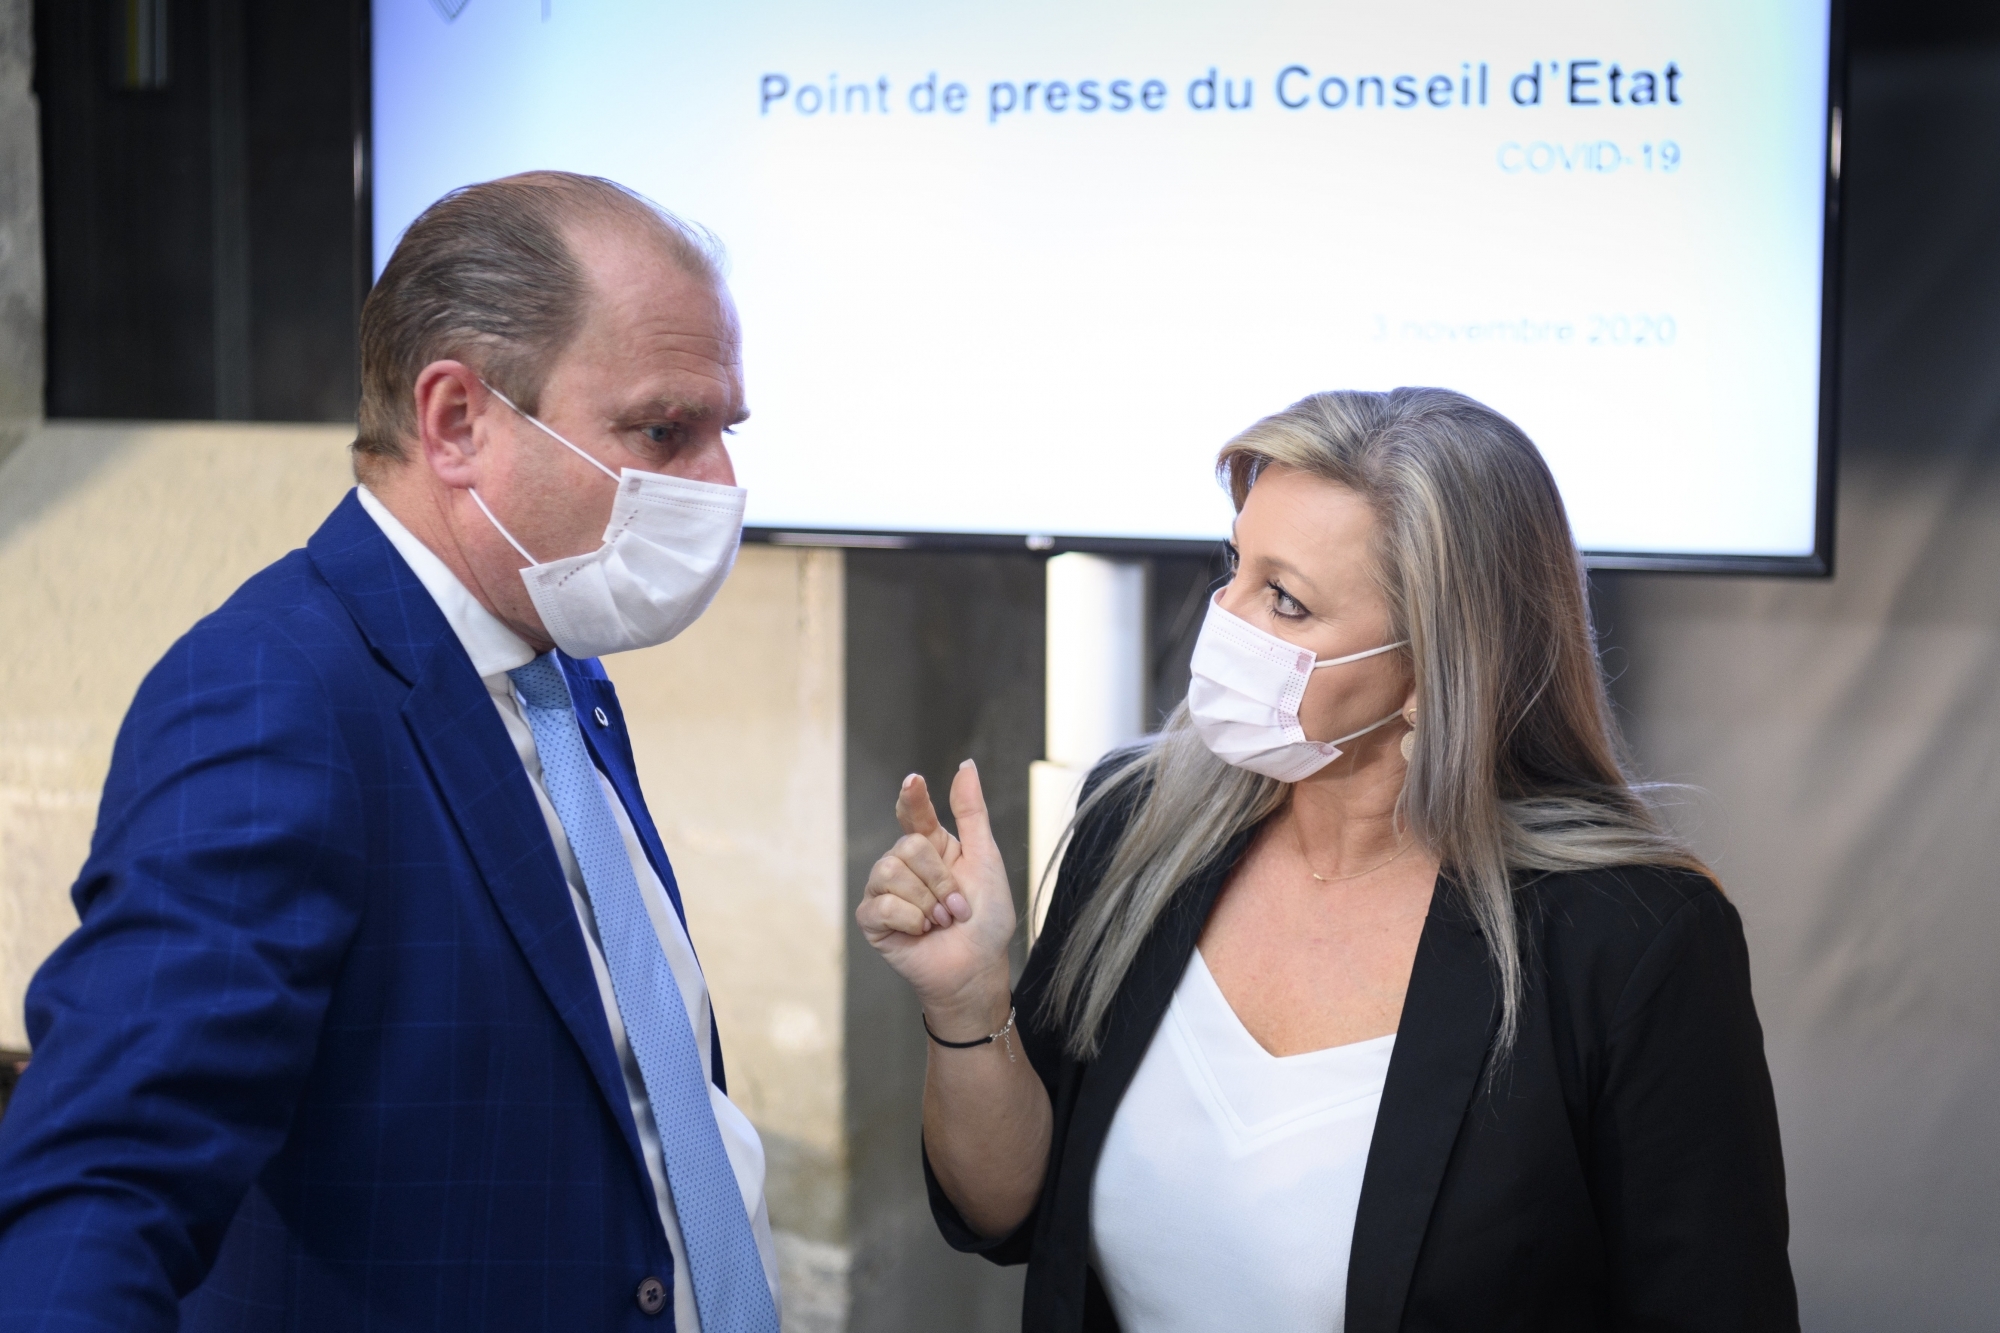 Le Conseil d'Etat vaudois (ici Philippe Leuba et Nuria Gorrite) font le point sur le dispositif mis en place pour lutter contre le coronavirus.